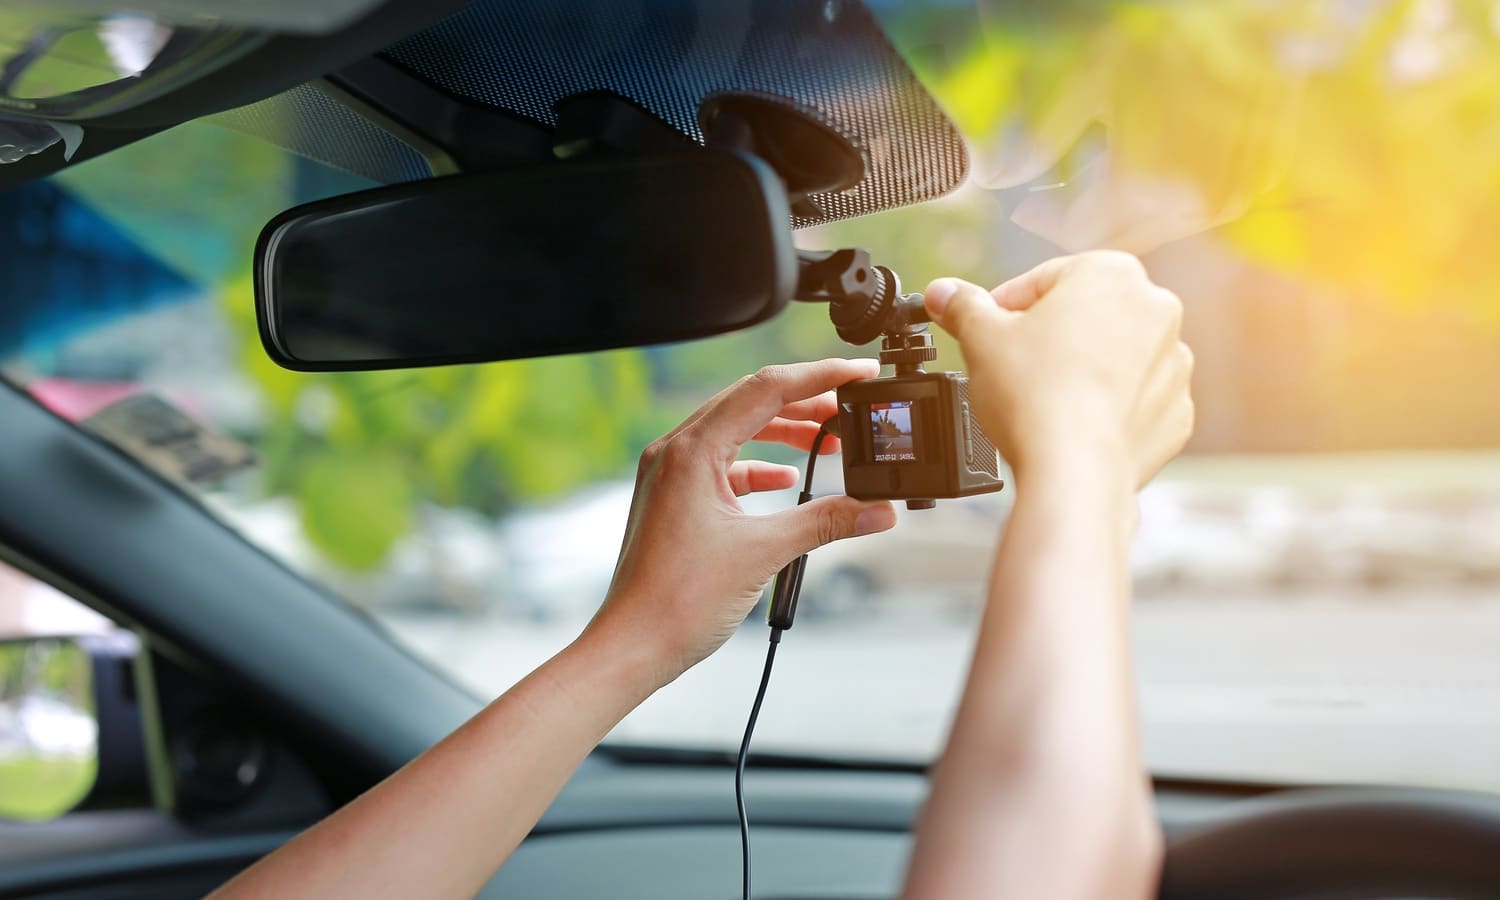 Dudas: ¿puedo instalar una cámara en mi coche? ¿Dónde y cuándo puedo grabar?